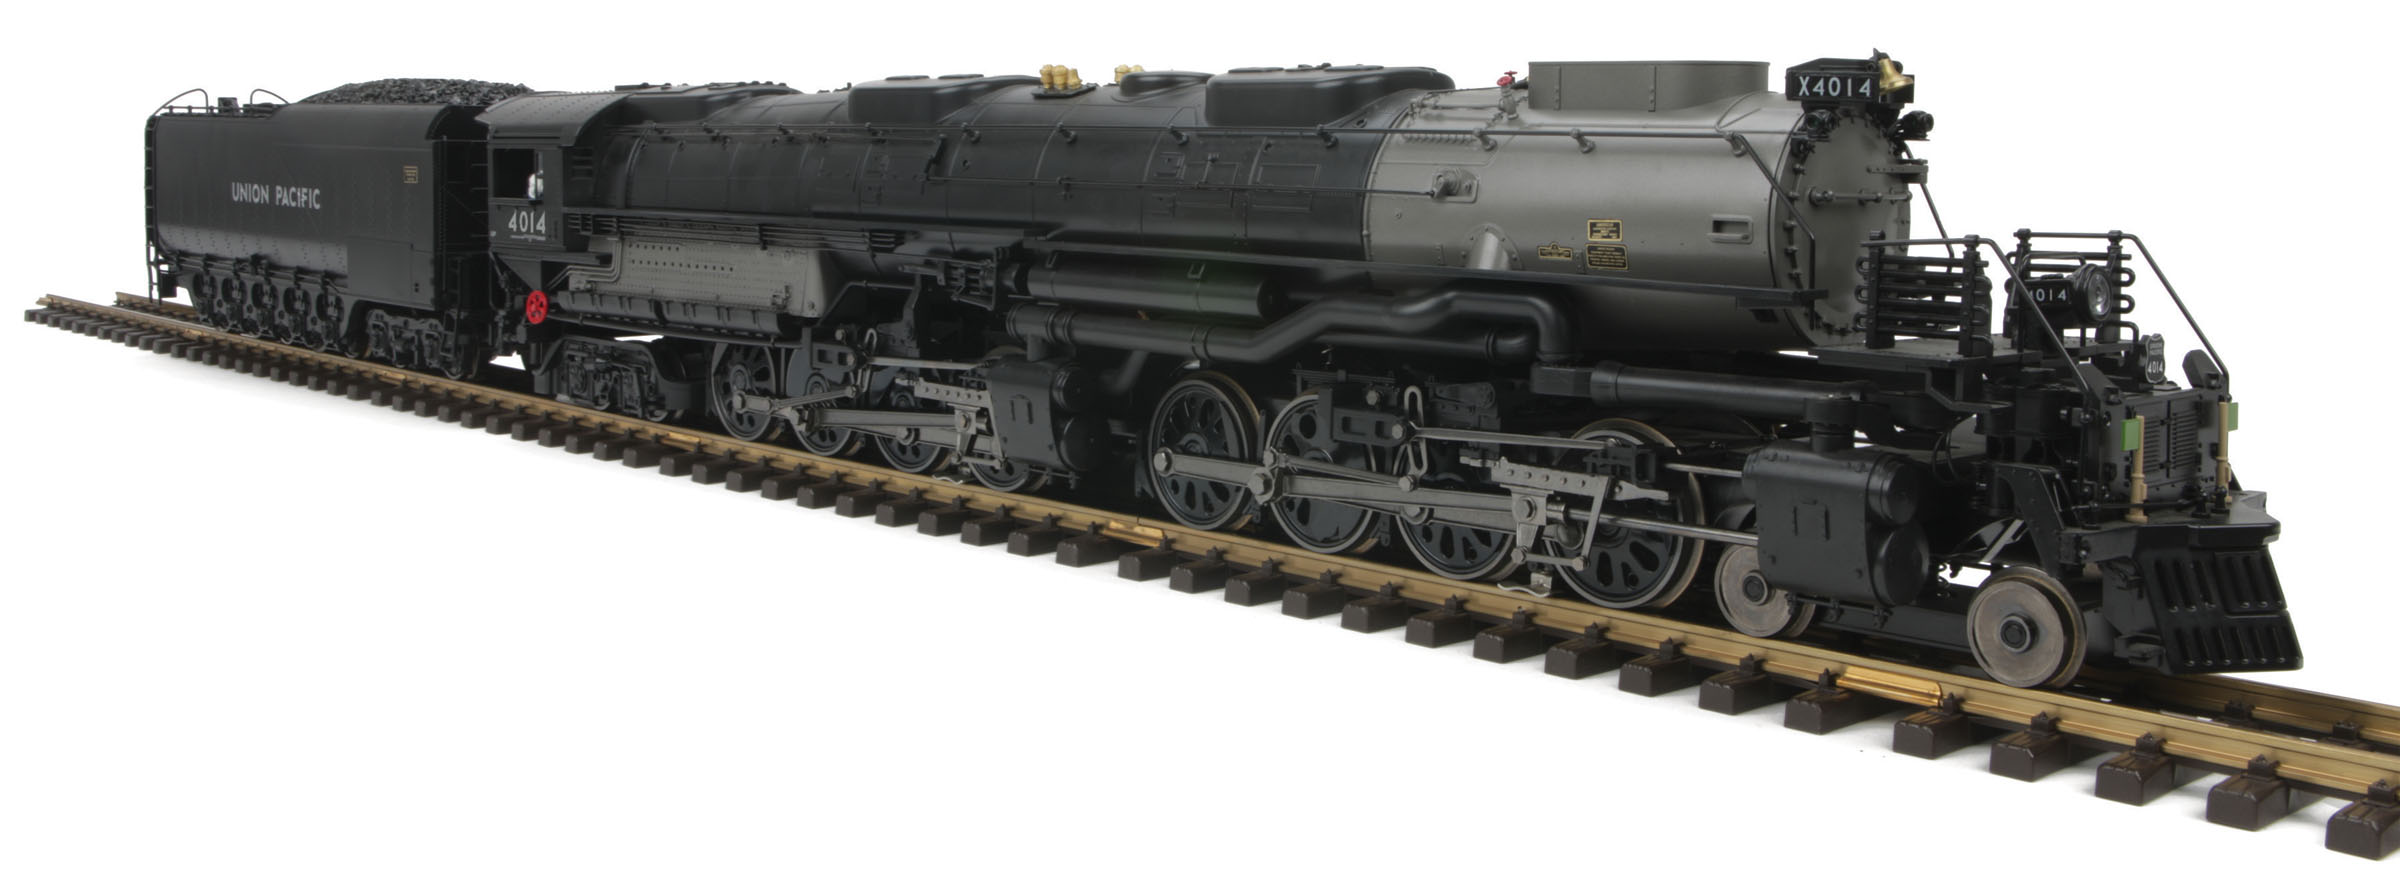 g scale big boy locomotive